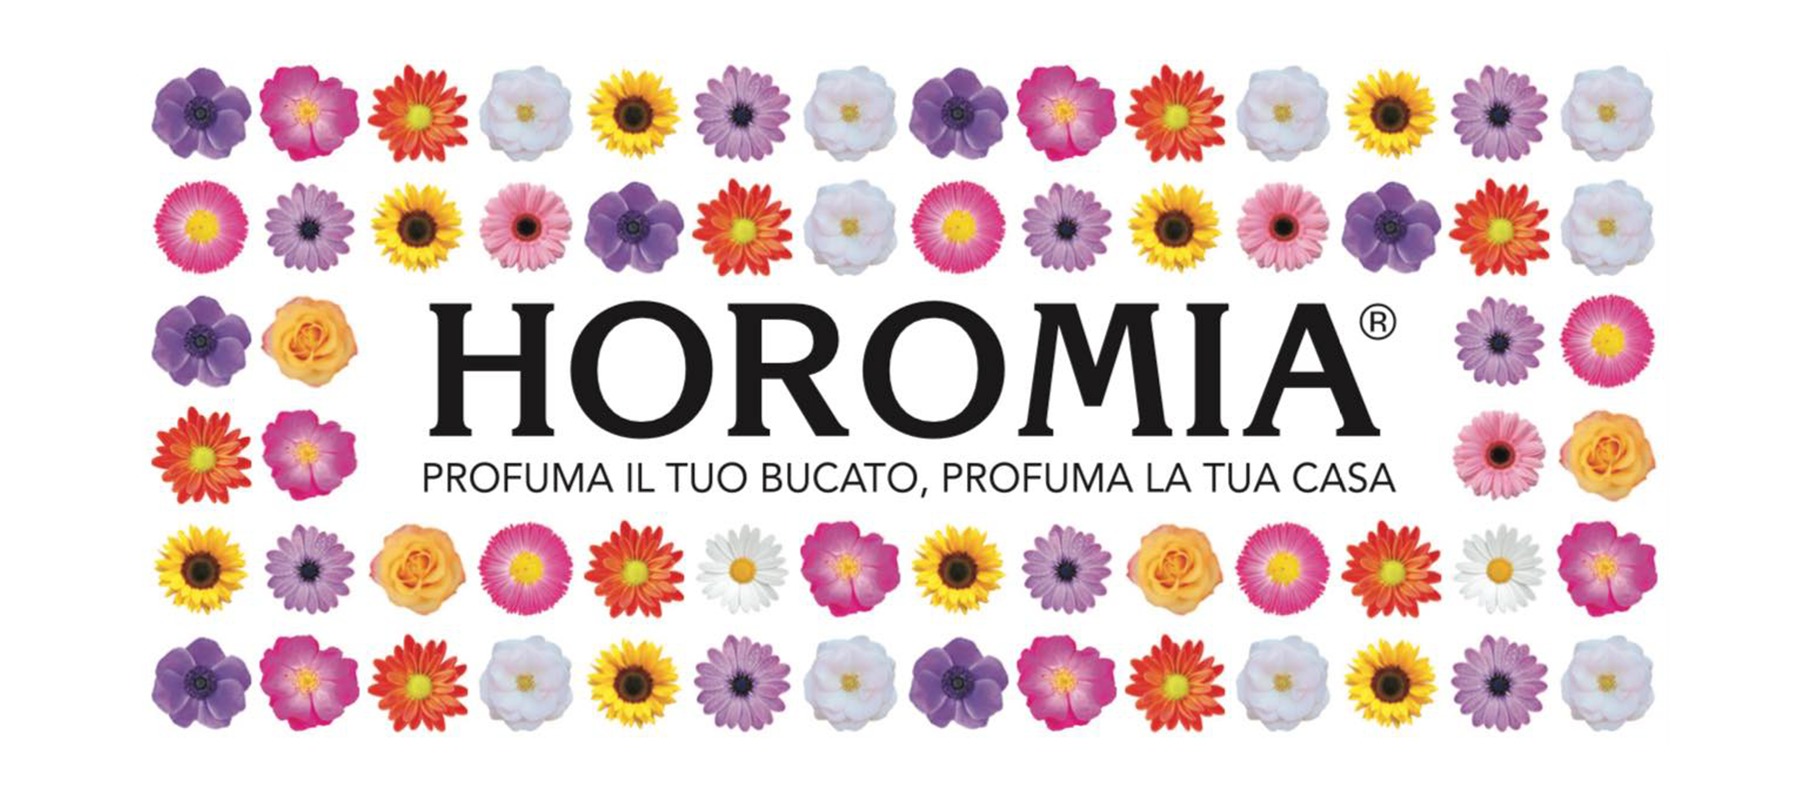 horomia-423